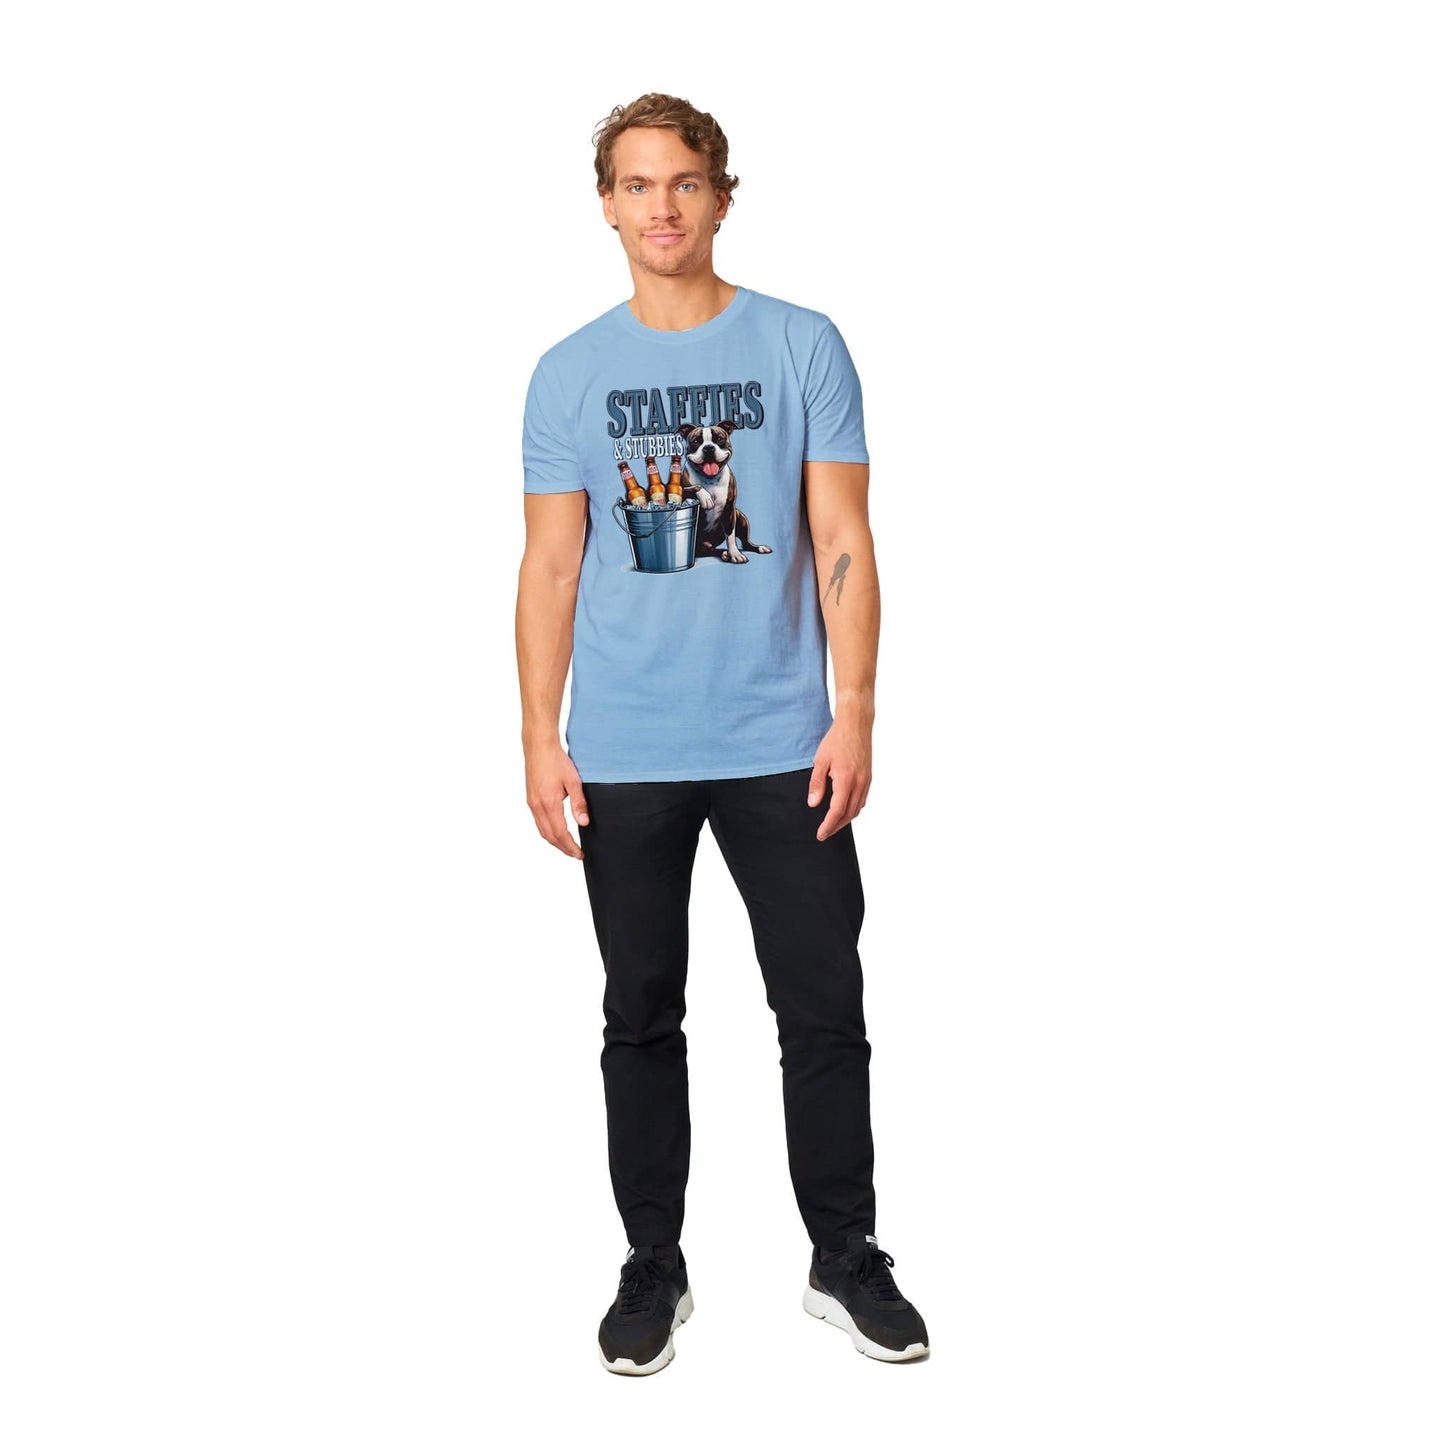 Staffies And Stubbies T-Shirt Australia Online Color